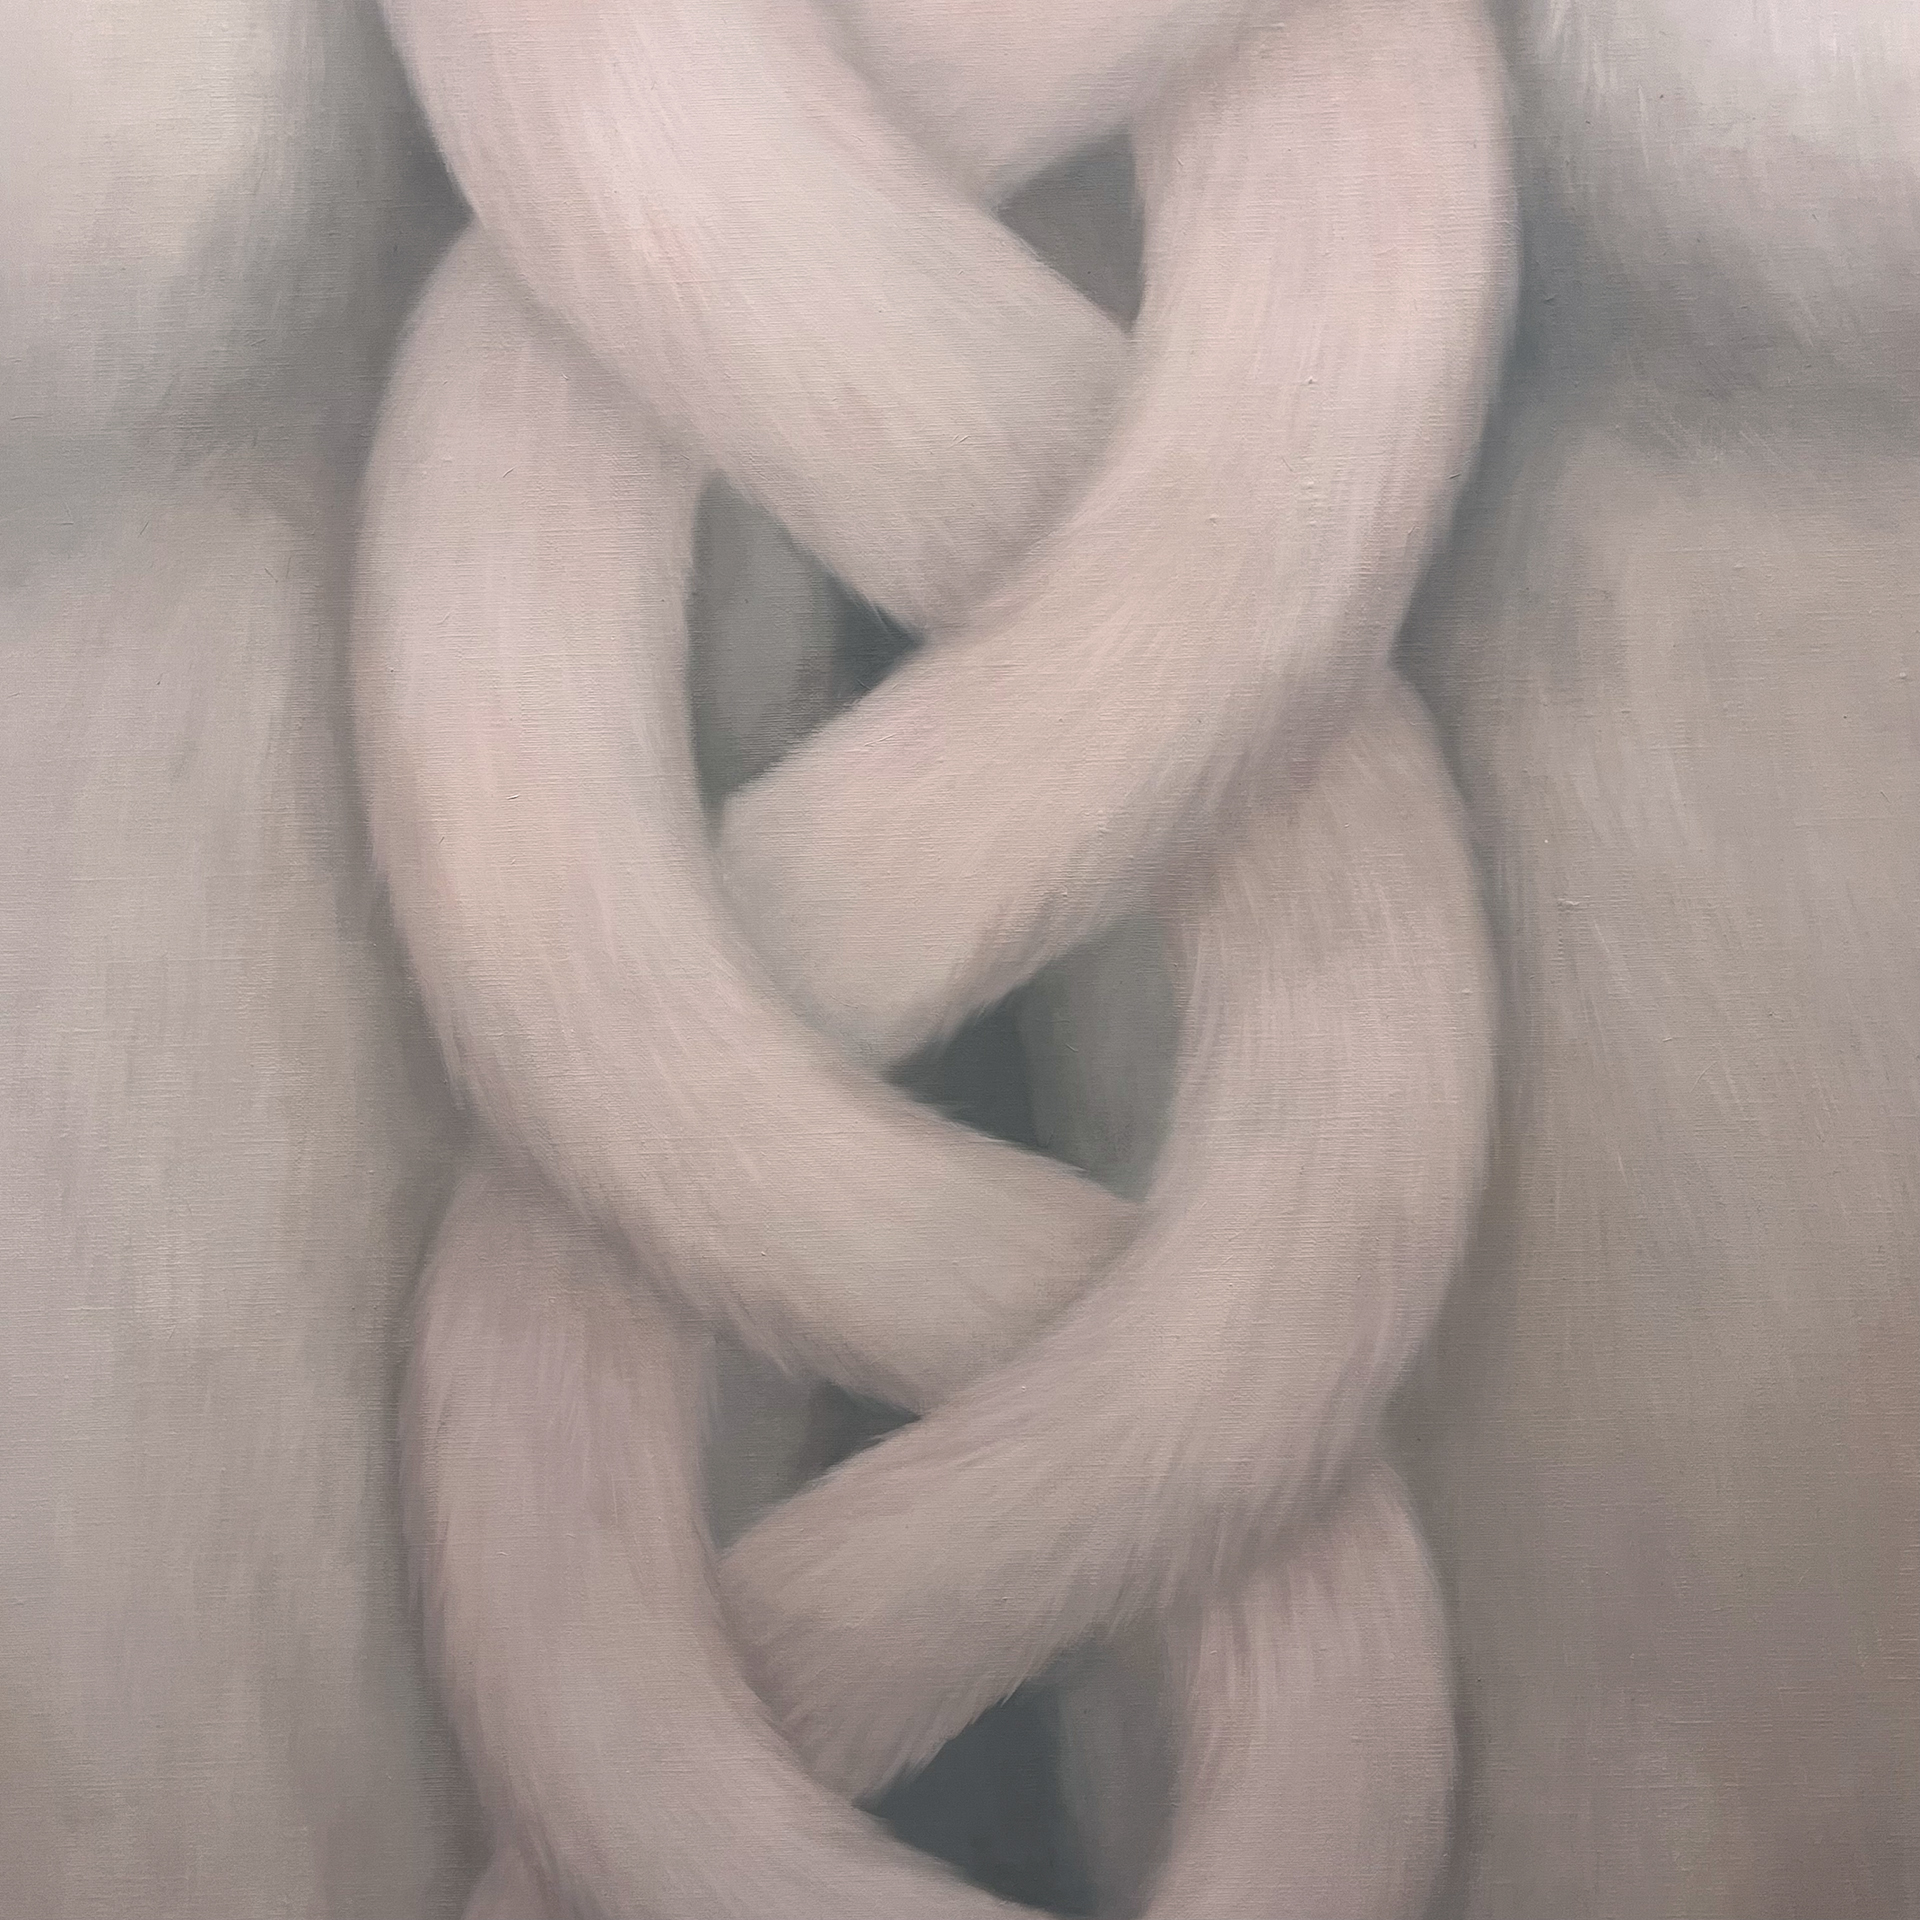 「Tails」, 2023, oil on canvas, 162cmX97cm 